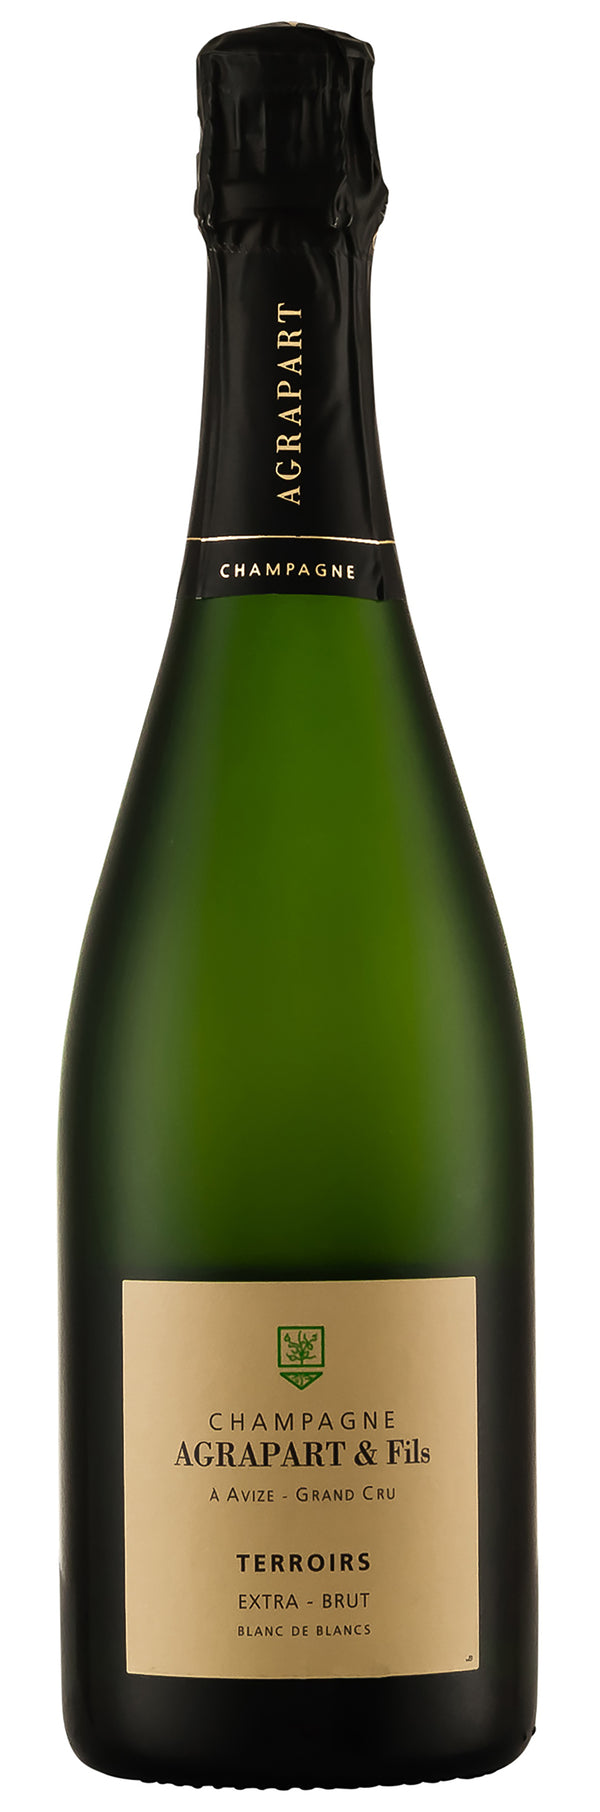 Champagne Agrapart Grand Cru Terroirs Blanc de Blancs NV (Disg. Mar 2022)